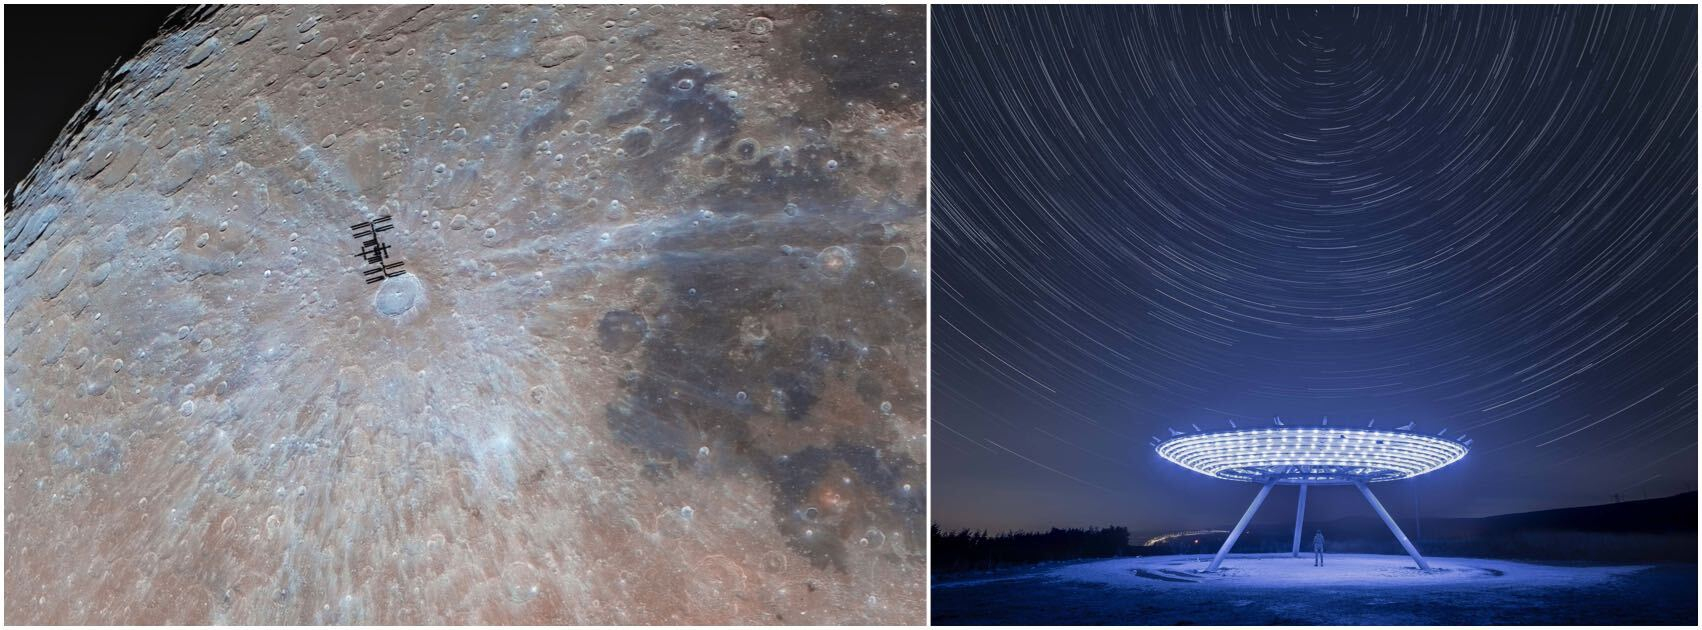 Immagini della Luna con la Stazione Spaziale Internazionale che le passa davanti e una parabola blu simile a un radar sotto un cielo pieno di scie stellari.